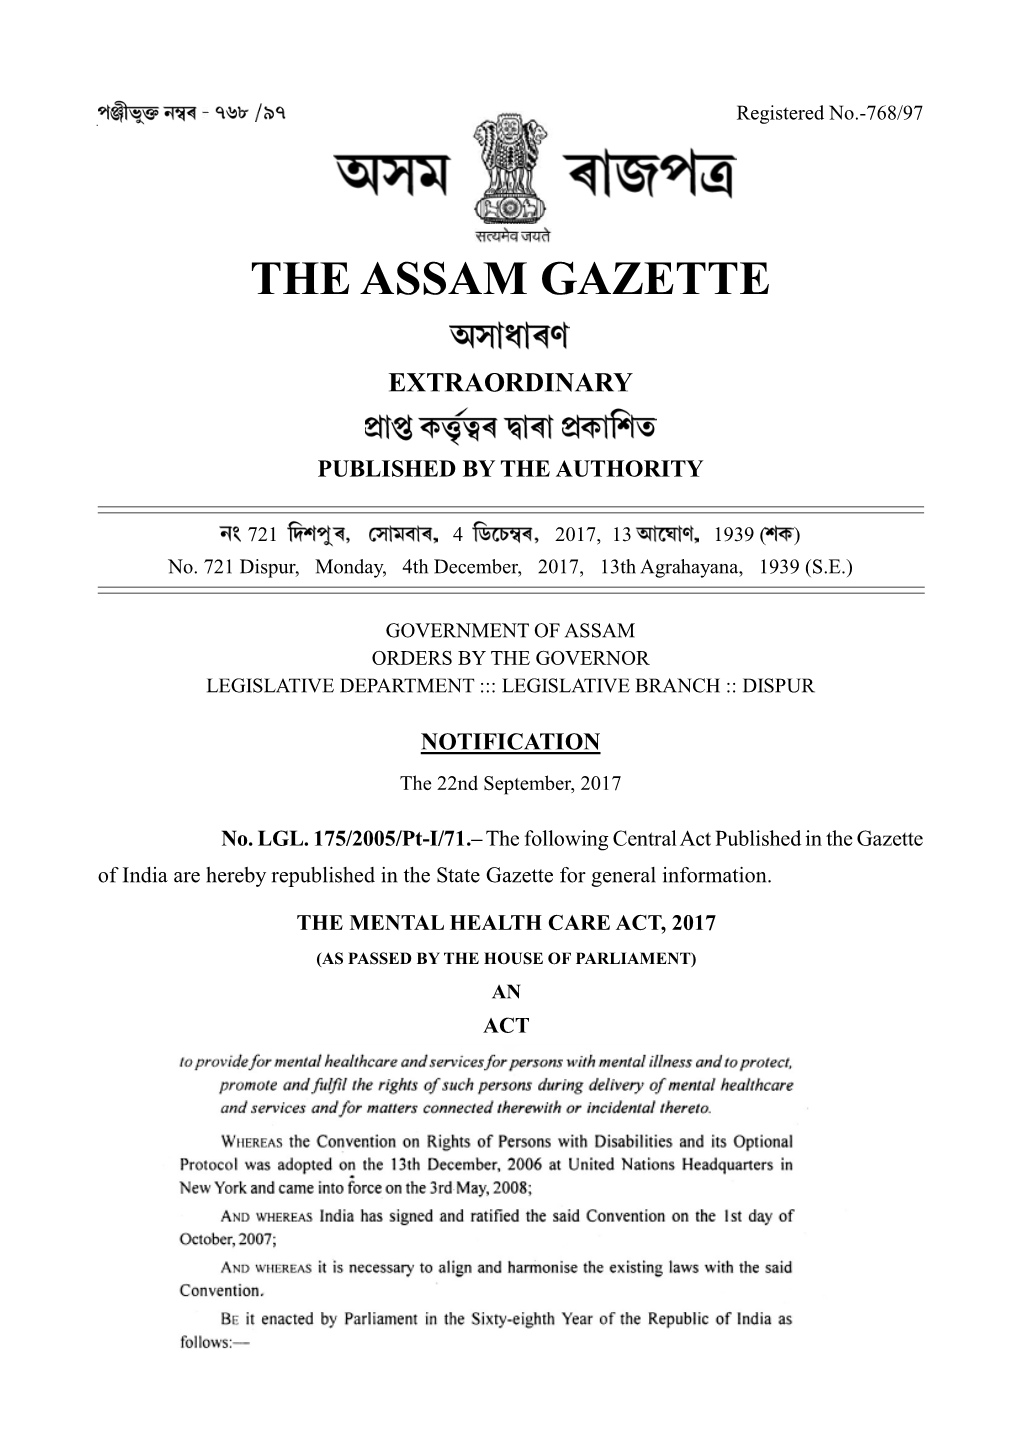 THE ASSAM GAZETTE, EXTRAORDINARY, DECEMBER Registered4, 2017 No.-768/97